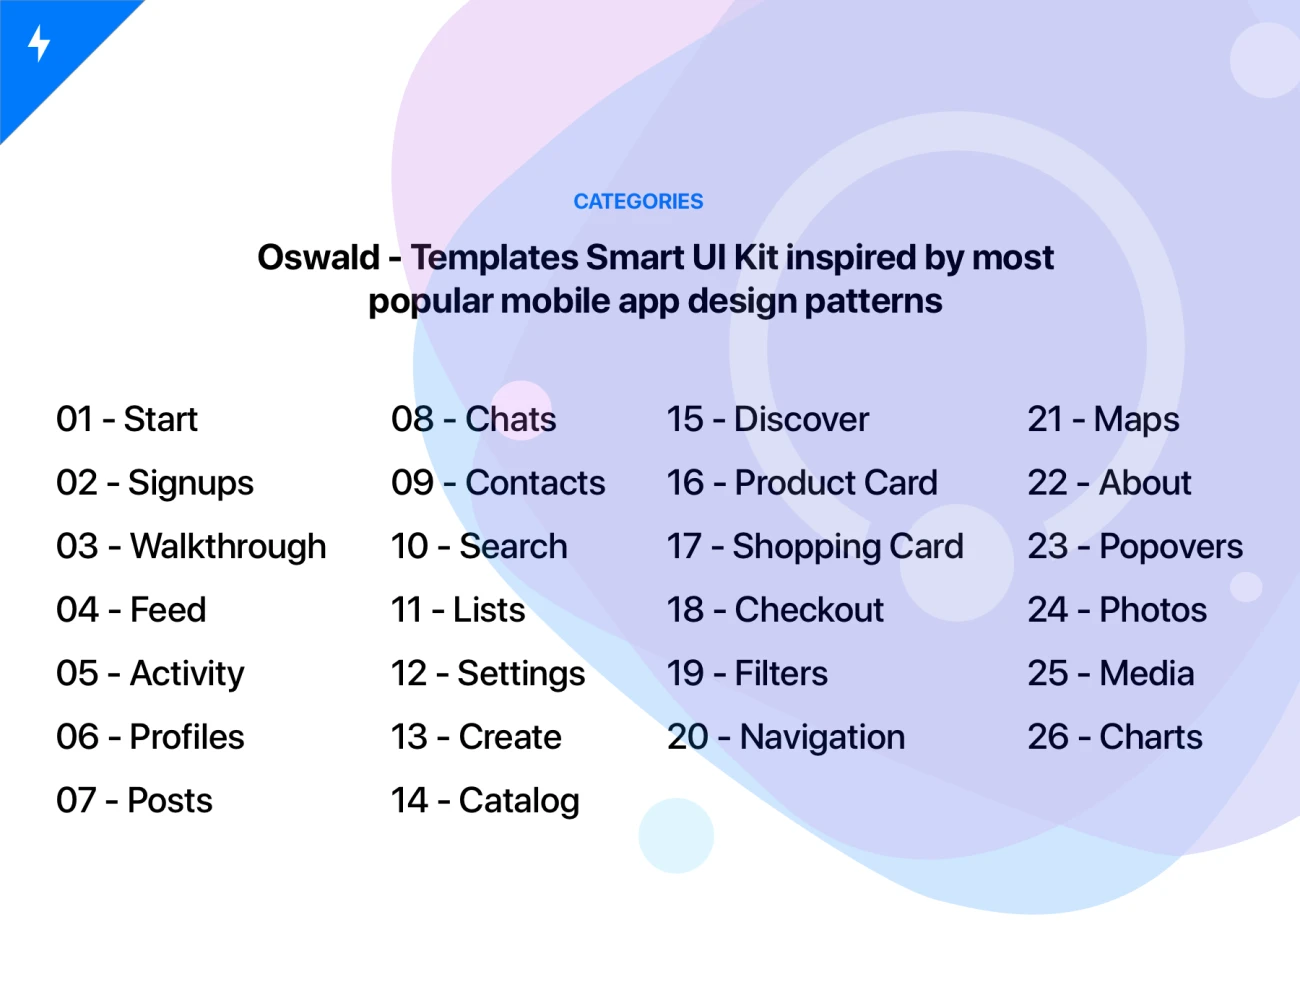 Oswald - Templates Smart UI Kit 智能模块明暗模式用户界面工具包-UI/UX、ui套件、列表、卡片式、图表、应用、支付、数据可视化-仪表板、网购、聊天、表单、预订-到位啦UI